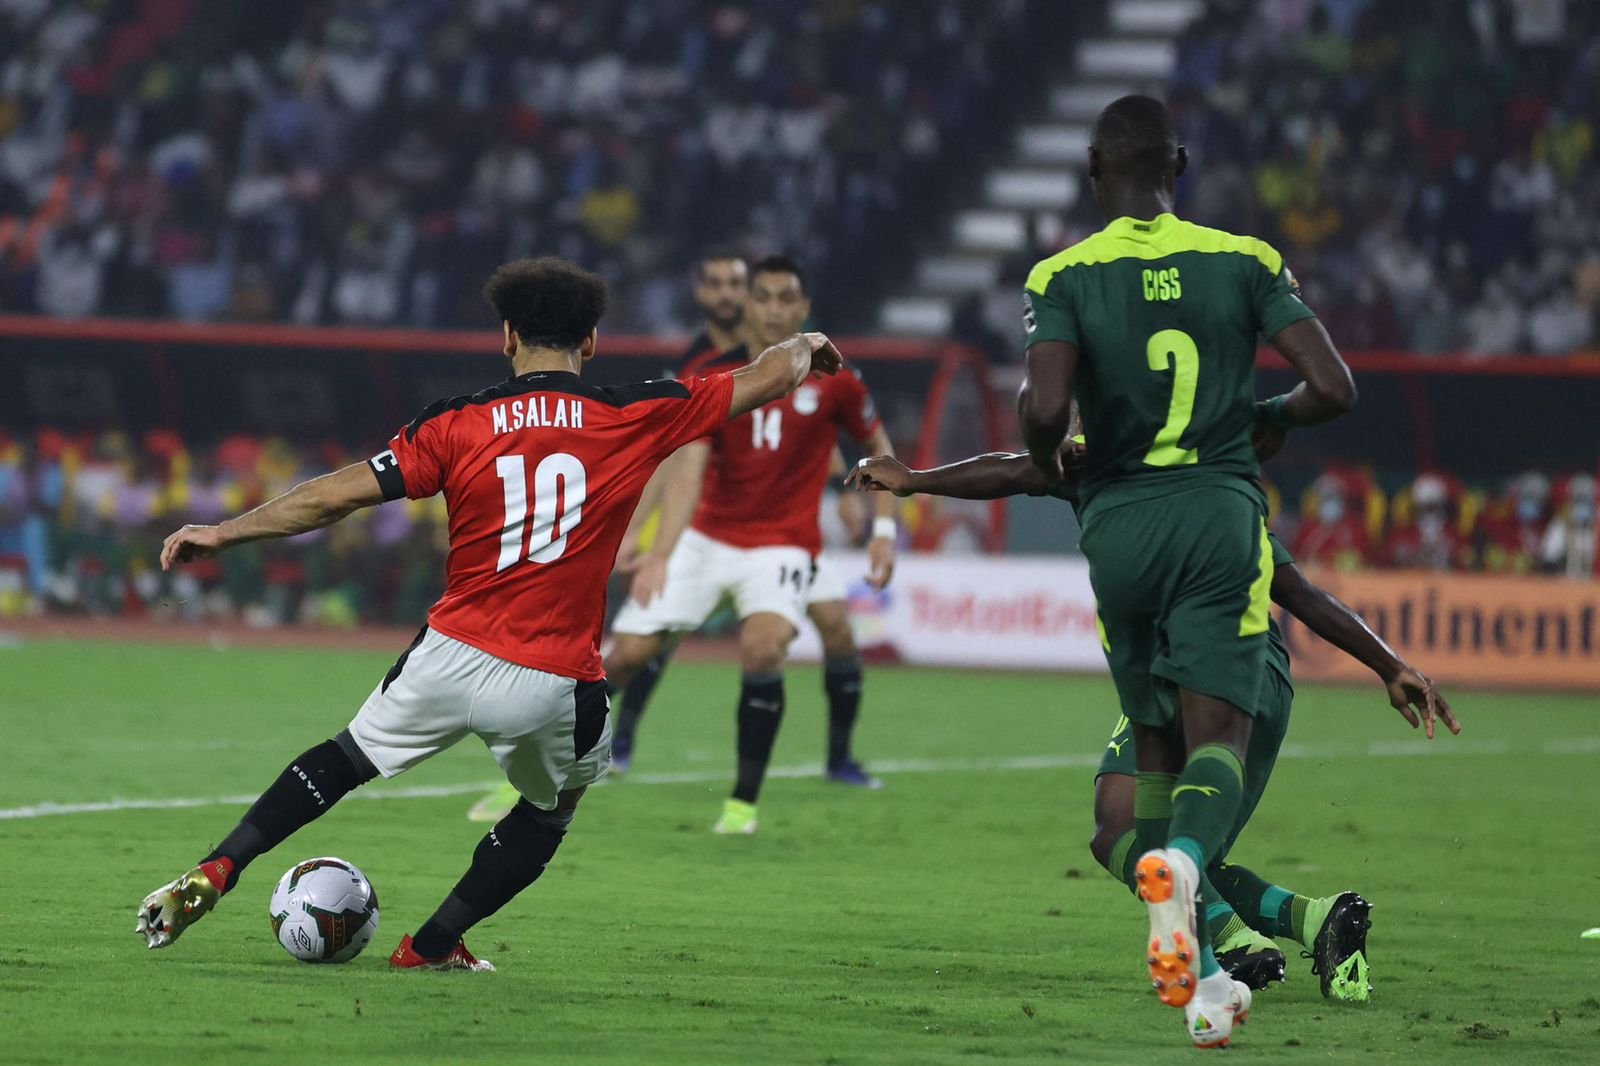 تأجيل دعوى ضد اتحاد الكرة بسبب مباراة مصر والسنغال السابقة